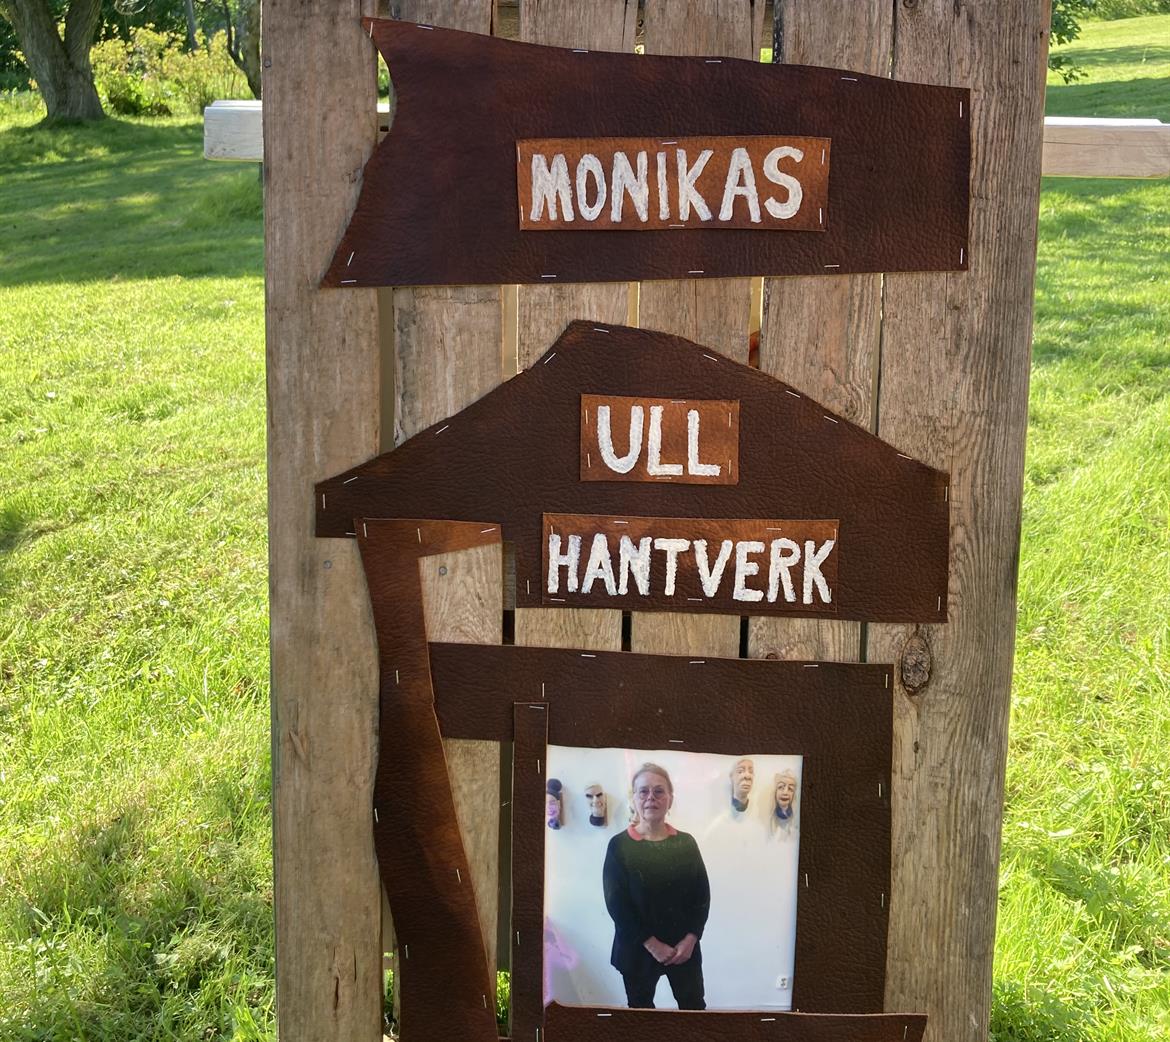 Monikas Ull hantverk skylt vid vägen